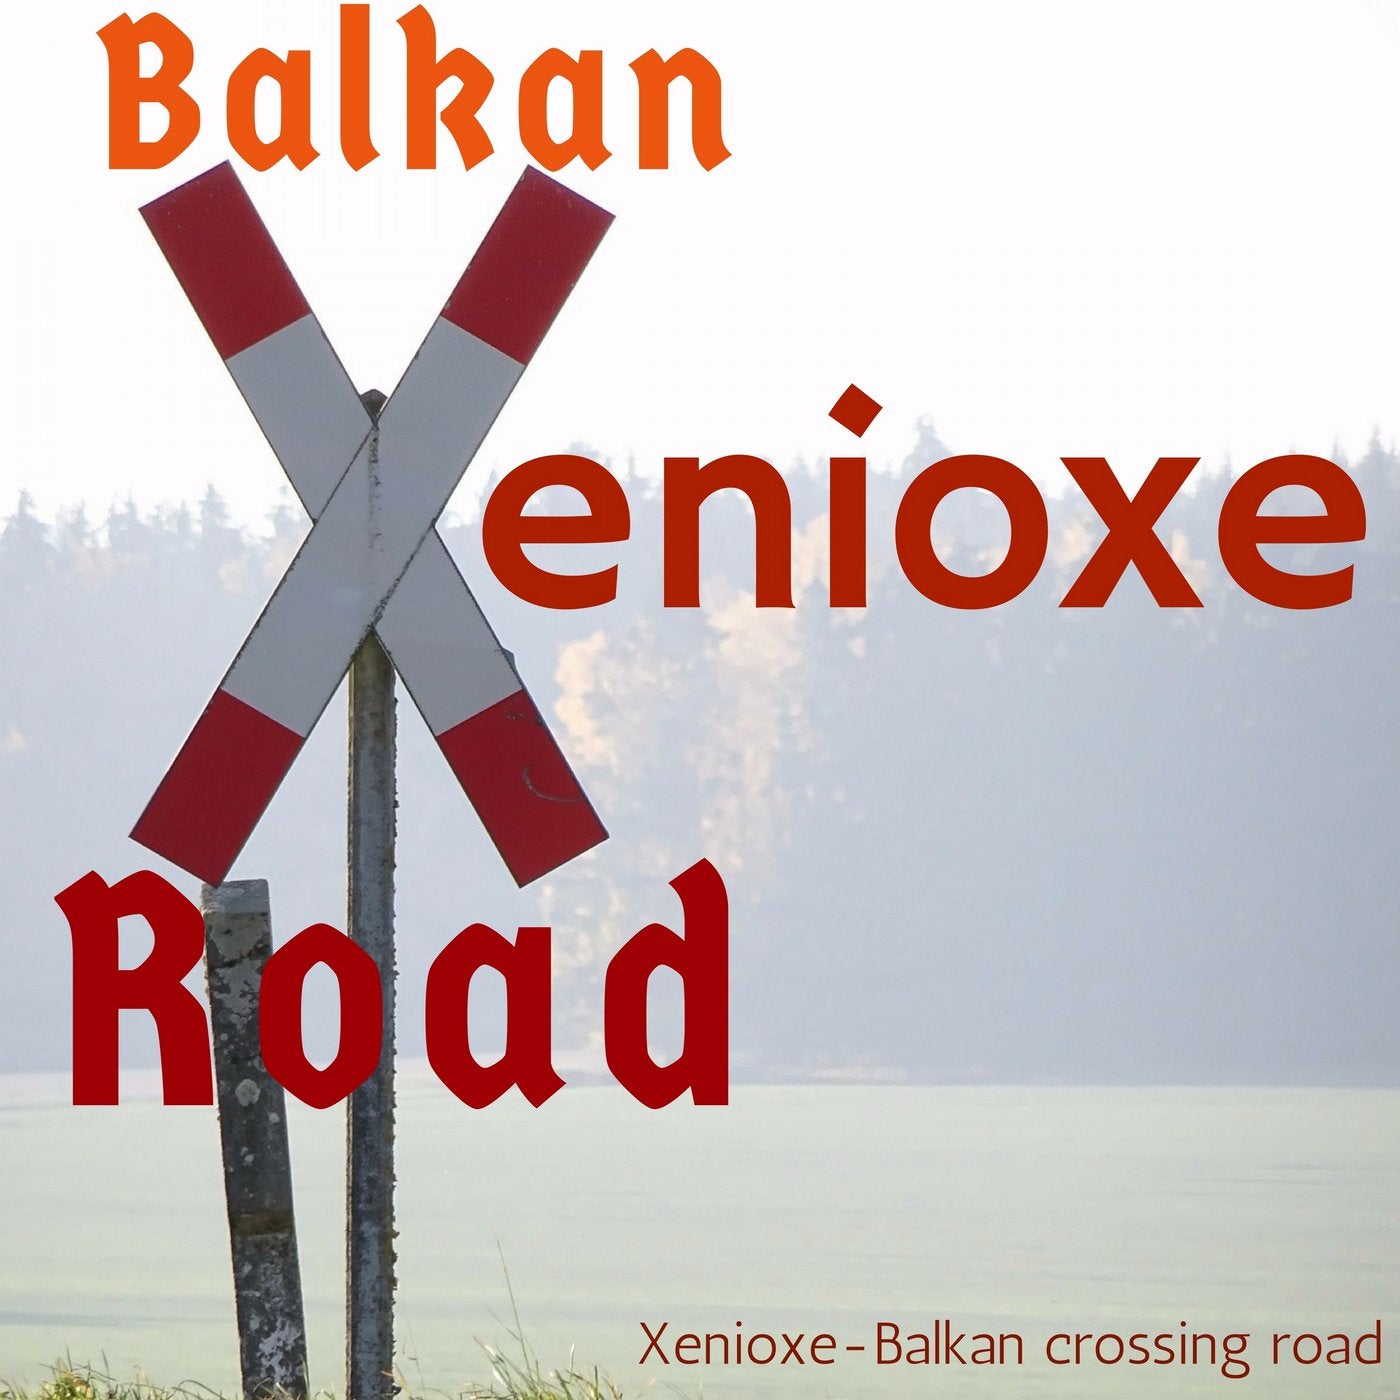 Balkan Crossing Road